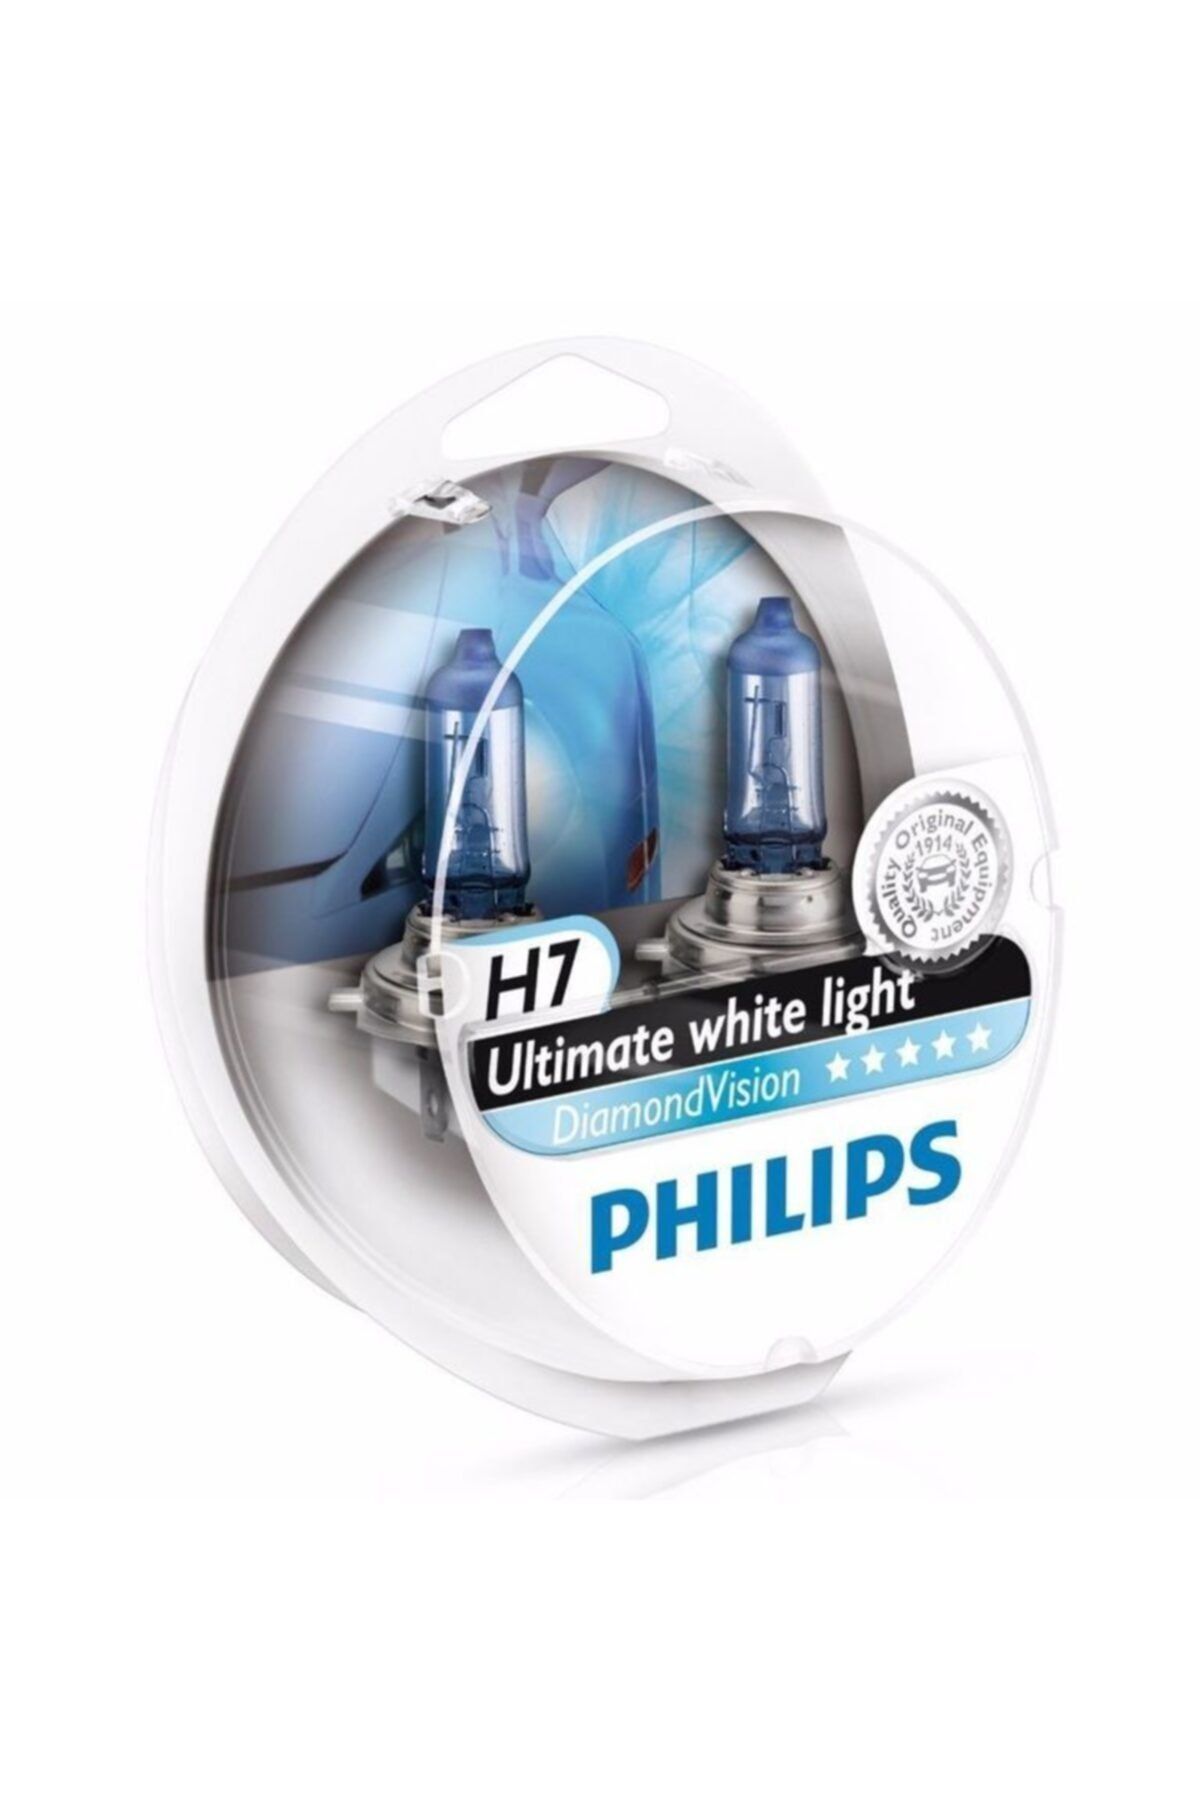 Philips H7 Diamond Vision Tam Beyaz Işık Ampul Seti 12972 Dvs2